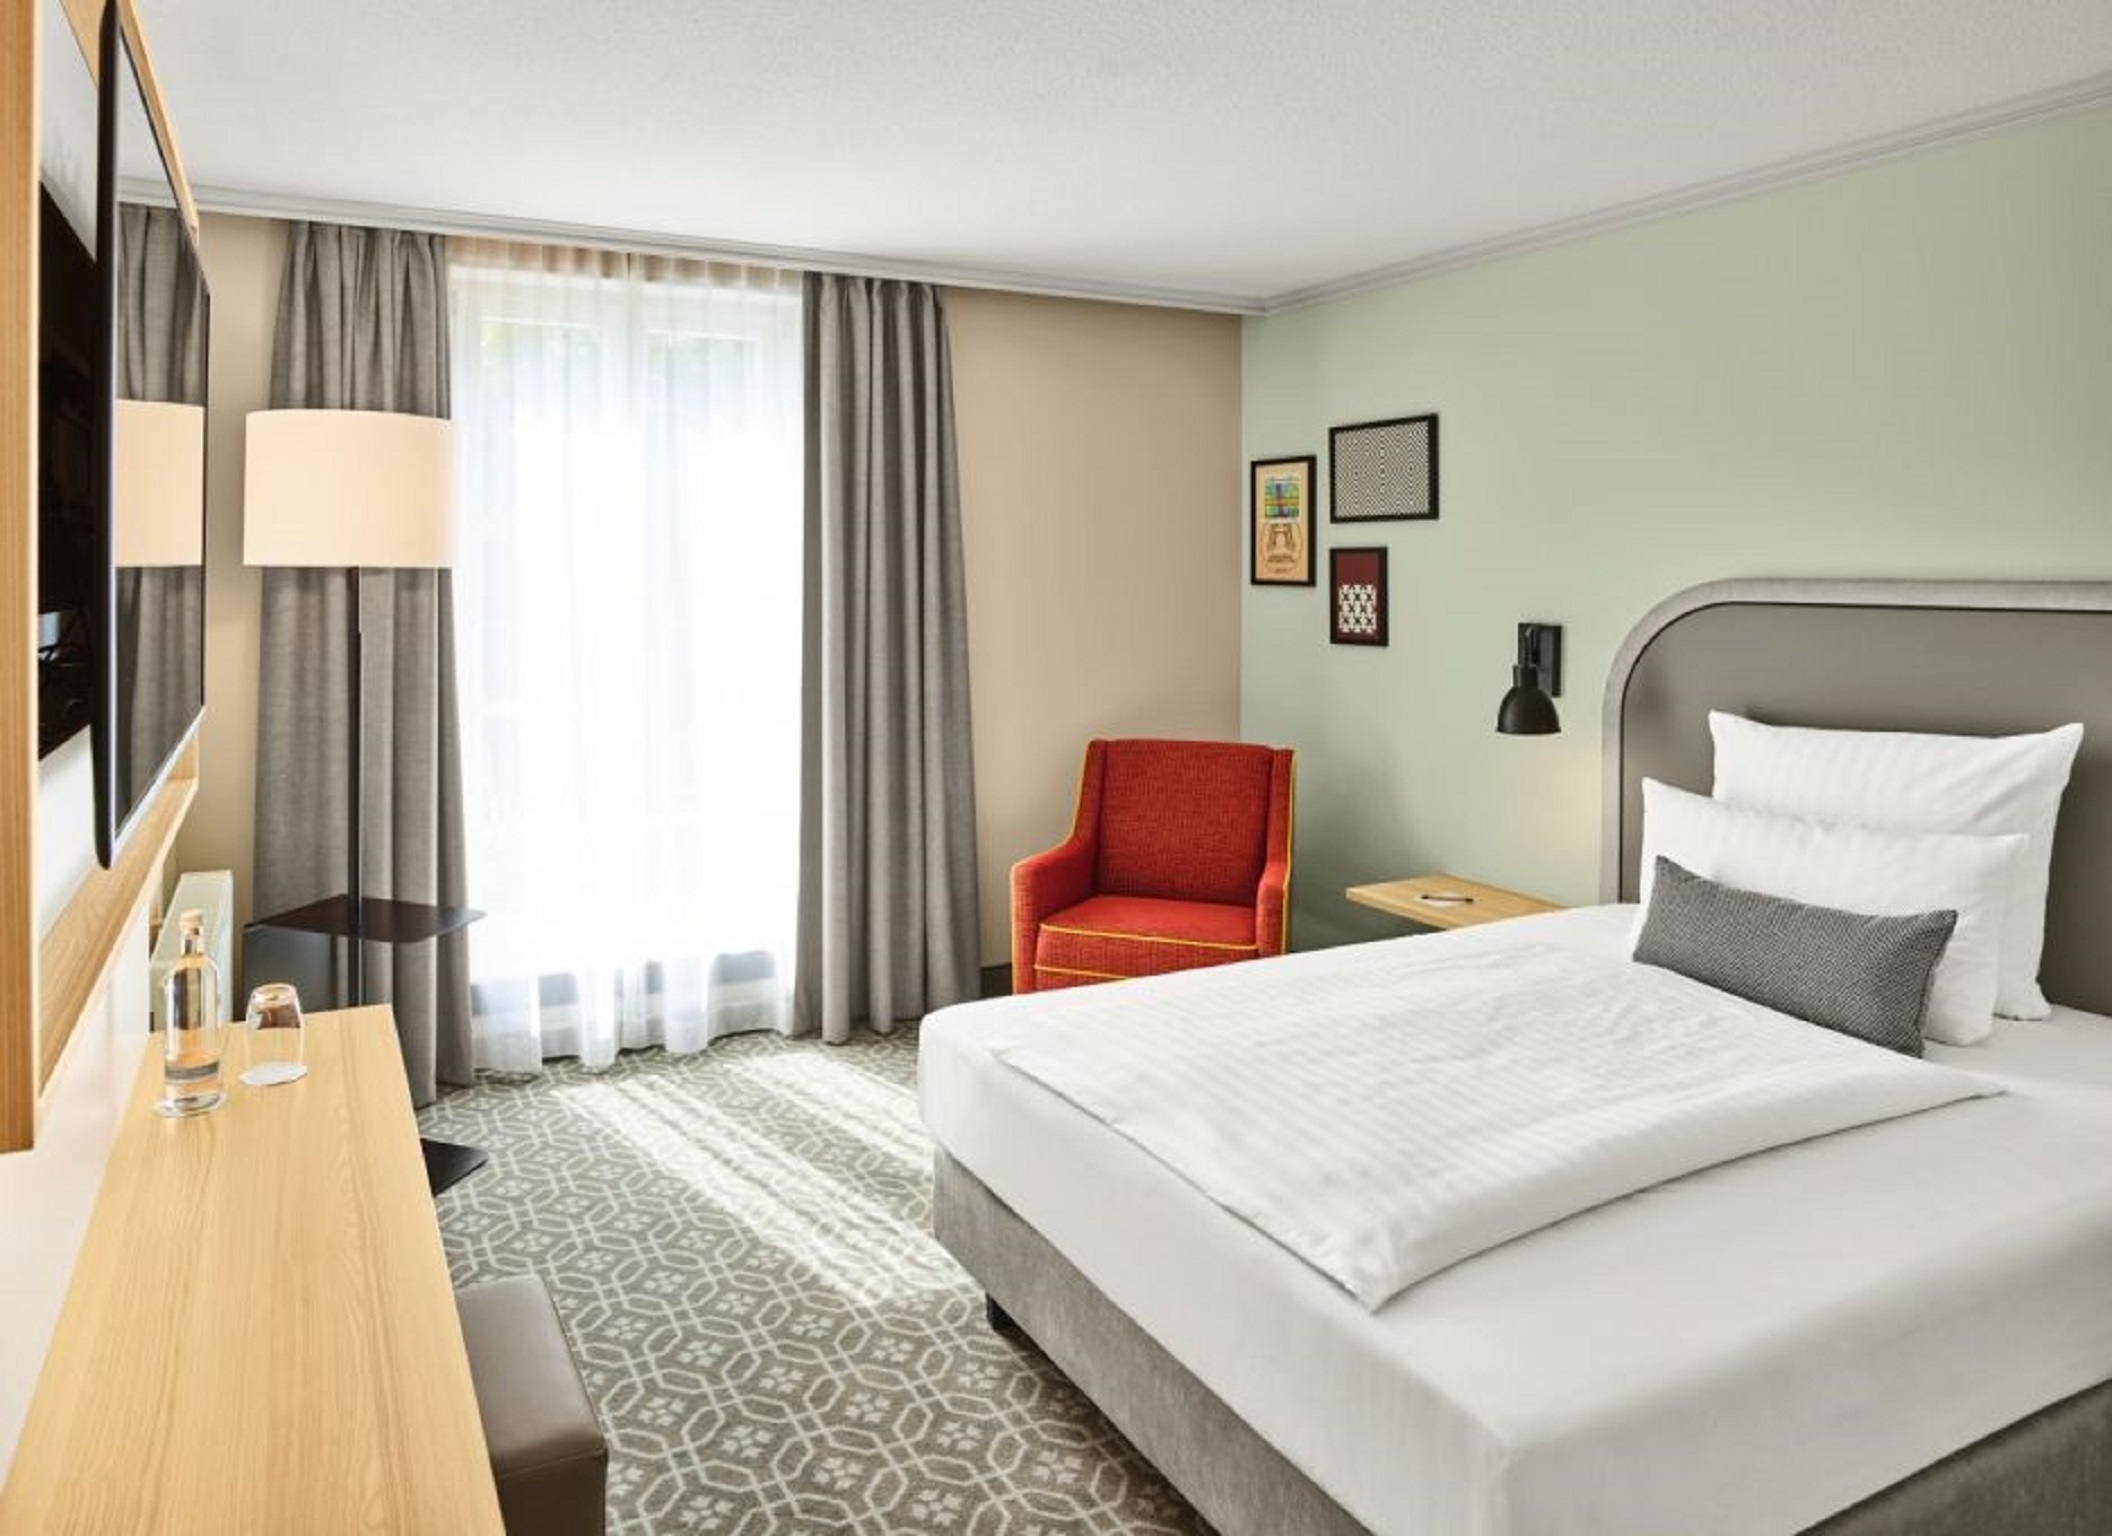 Steigenberger Hotel Sanssouci <br/>117.78 ew <br/> <a href='http://vakantieoplossing.nl/outpage/?id=92d84cf35eb1527431cd81a83d8a4e89' target='_blank'>View Details</a>